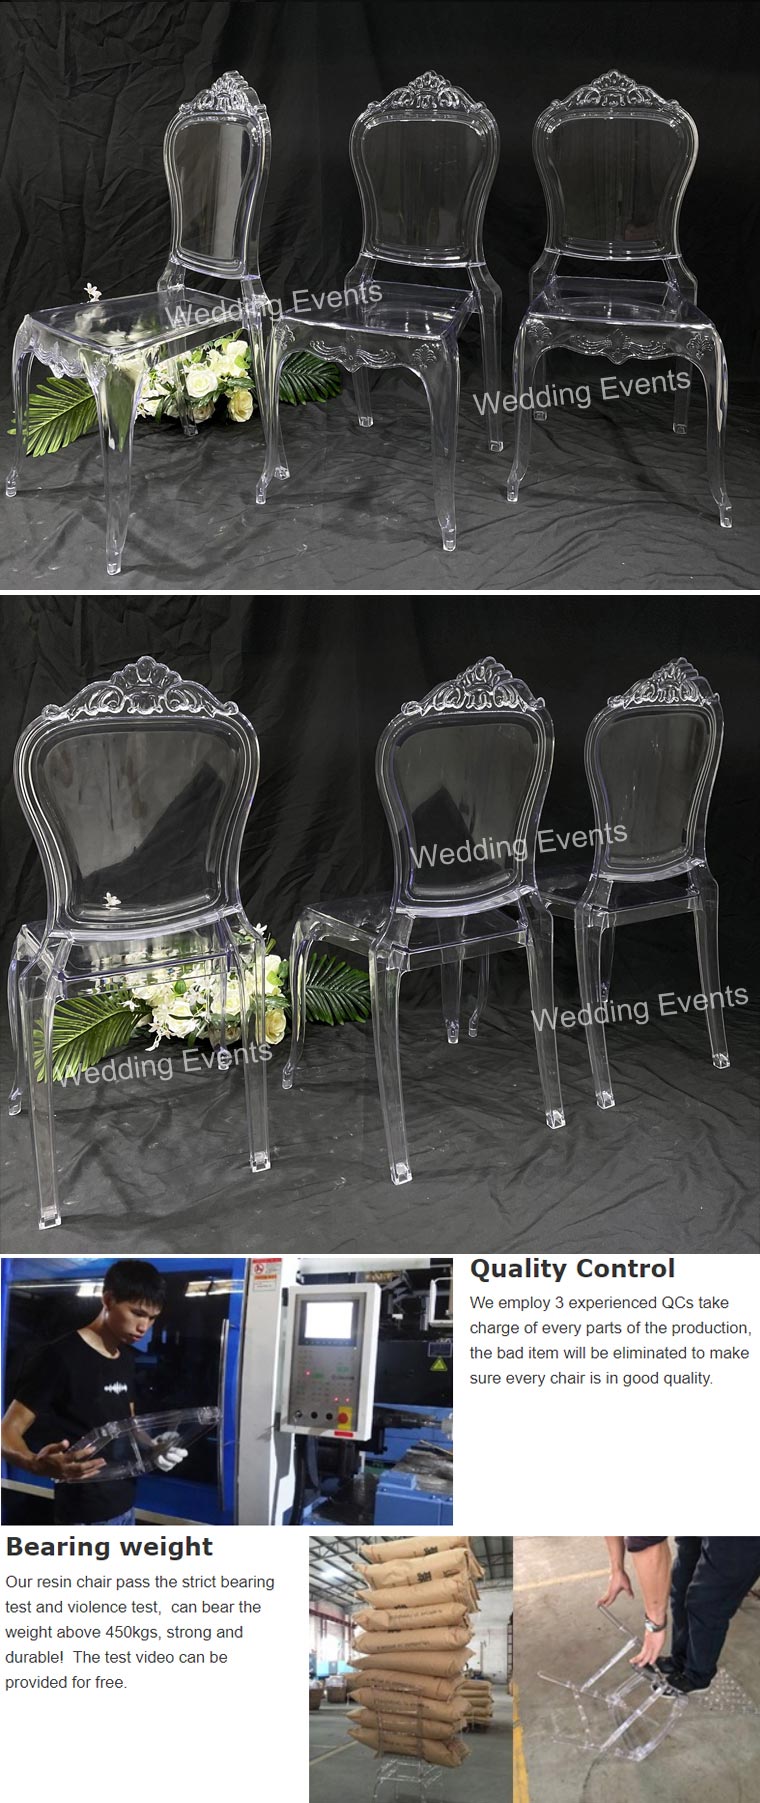 Ghost chair wedding reception